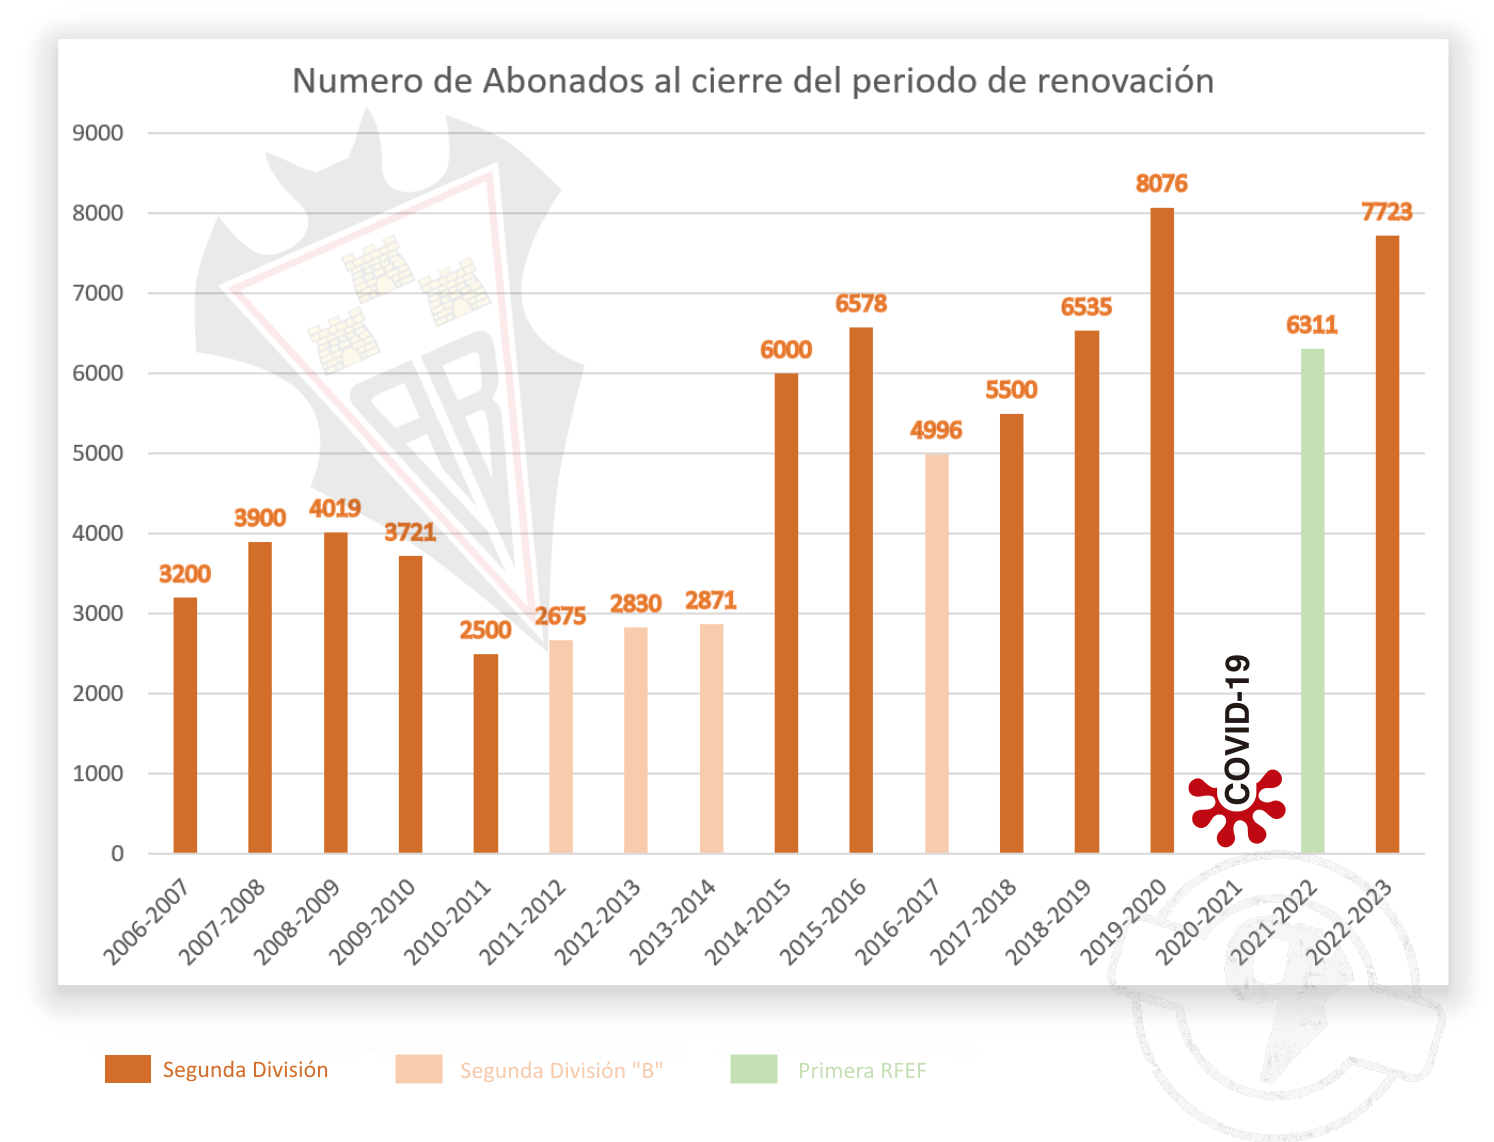 Evolución del número de renovaciones de abonados del Albacete Balompié